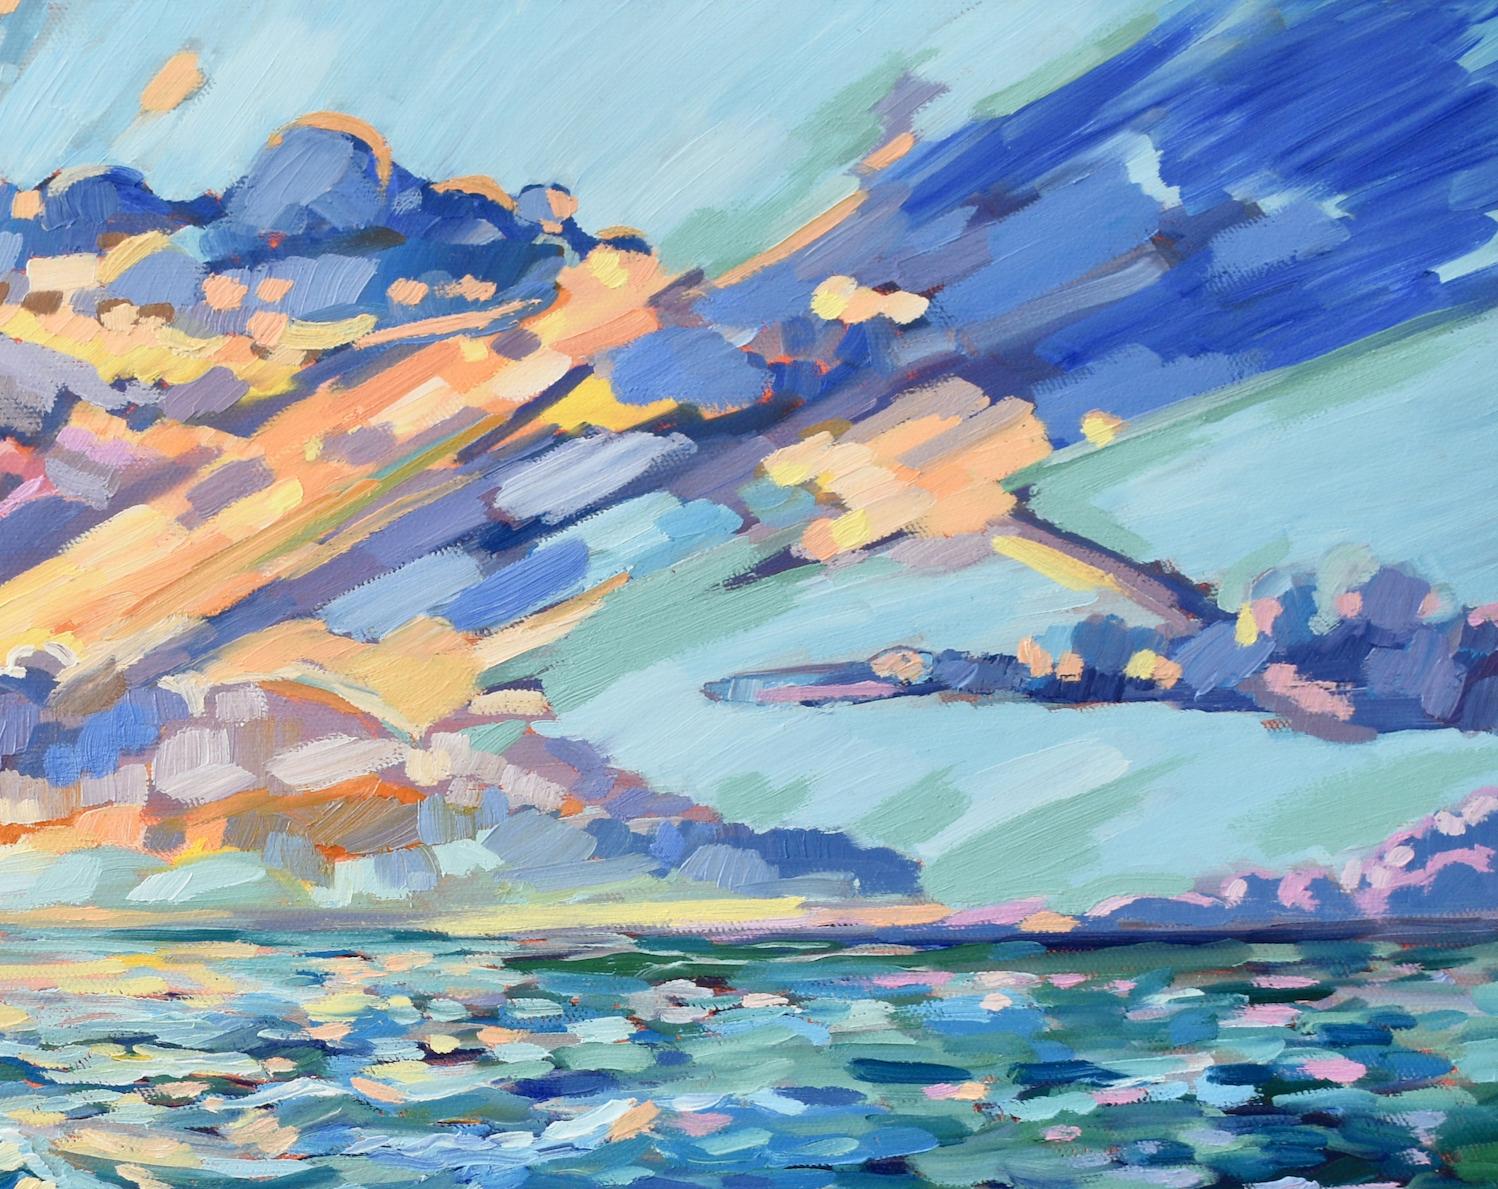 Paradies an der Golfküste, originales zeitgenössisches impressionistisches Landschaftsgemälde (Abstrakter Impressionismus), Painting, von April Moffatt